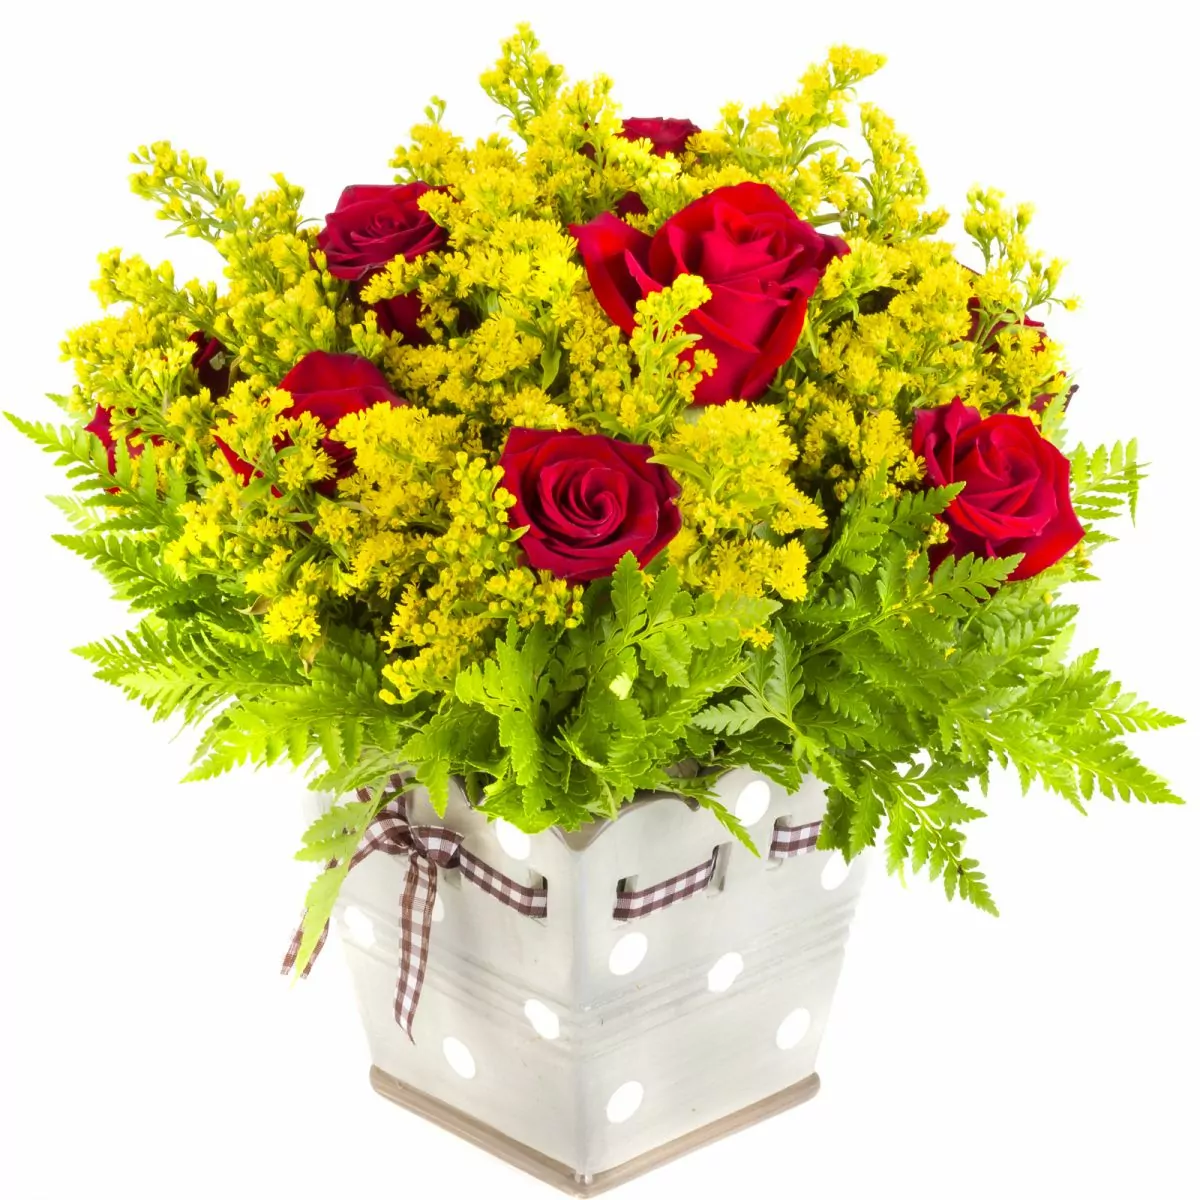 Foto principal Ariel Rojo - Arreglo floral con rosas rojas y solidago amarillo